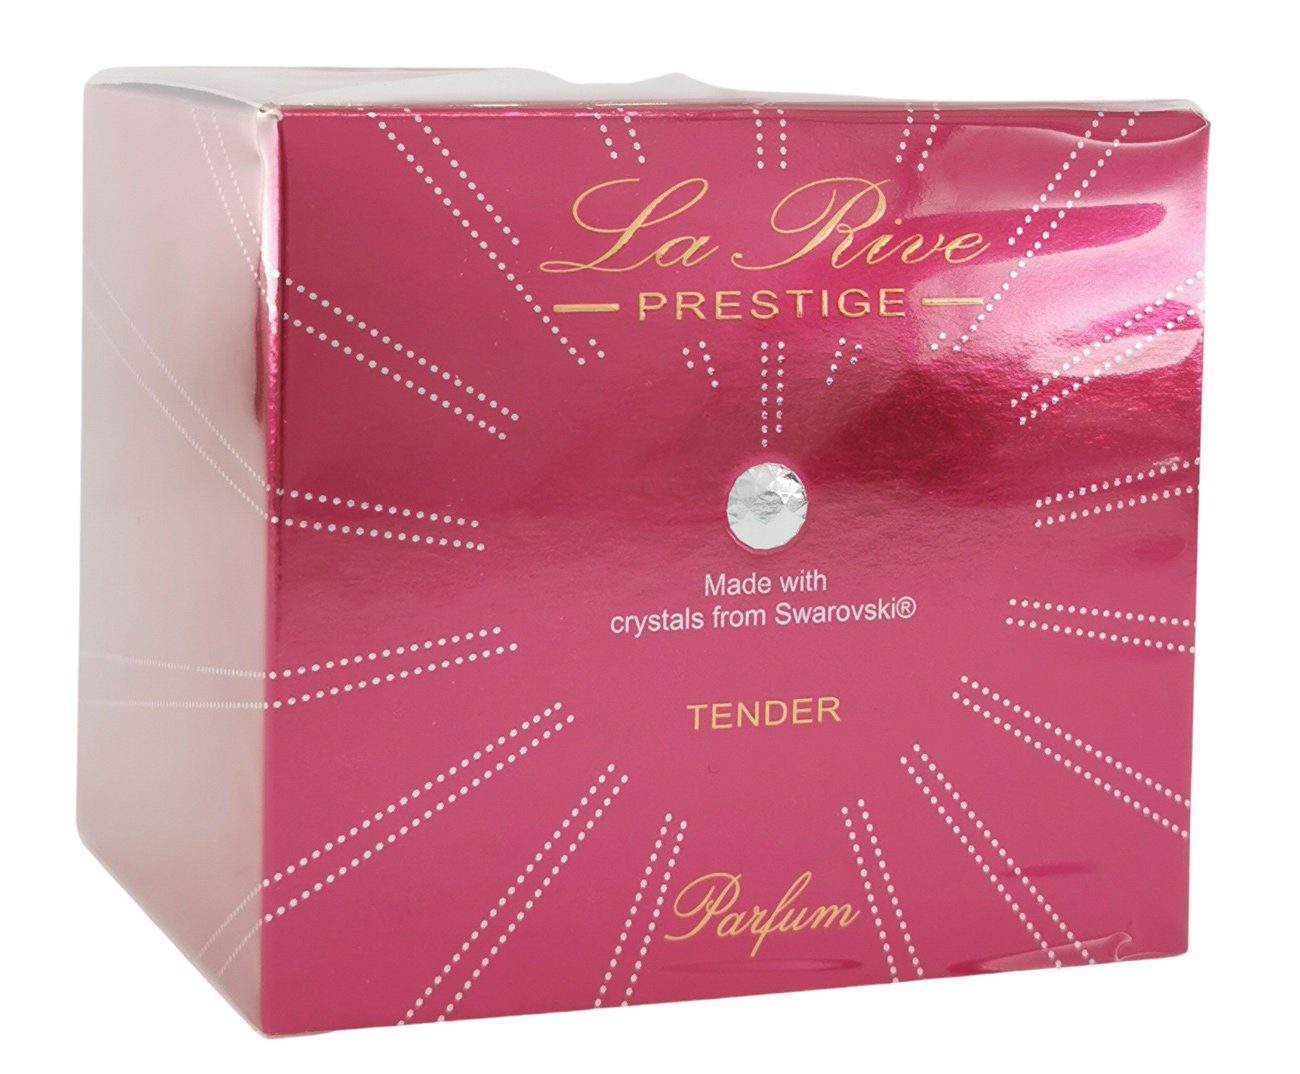 La Tender - ml RIVE 75 Parfum Rive Prestige de LA - Eau Parfum